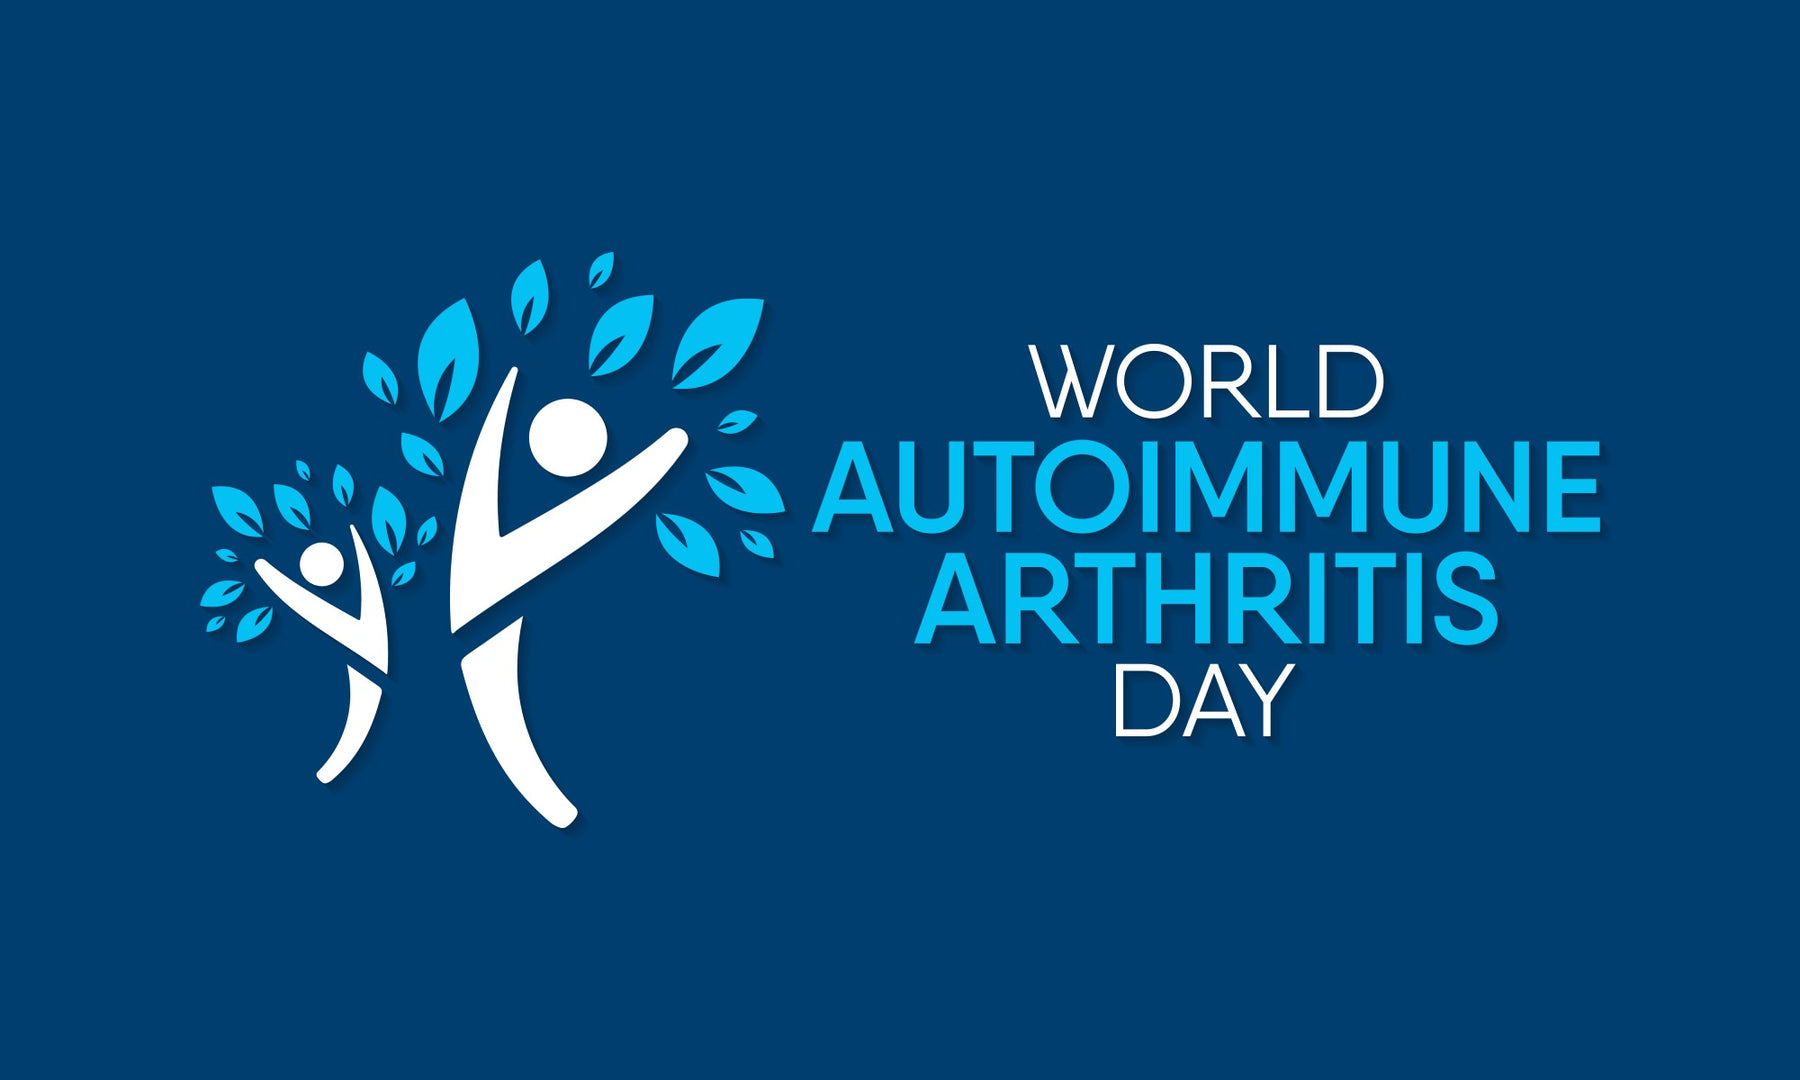 World Autoimmune Arthritis Day 2021